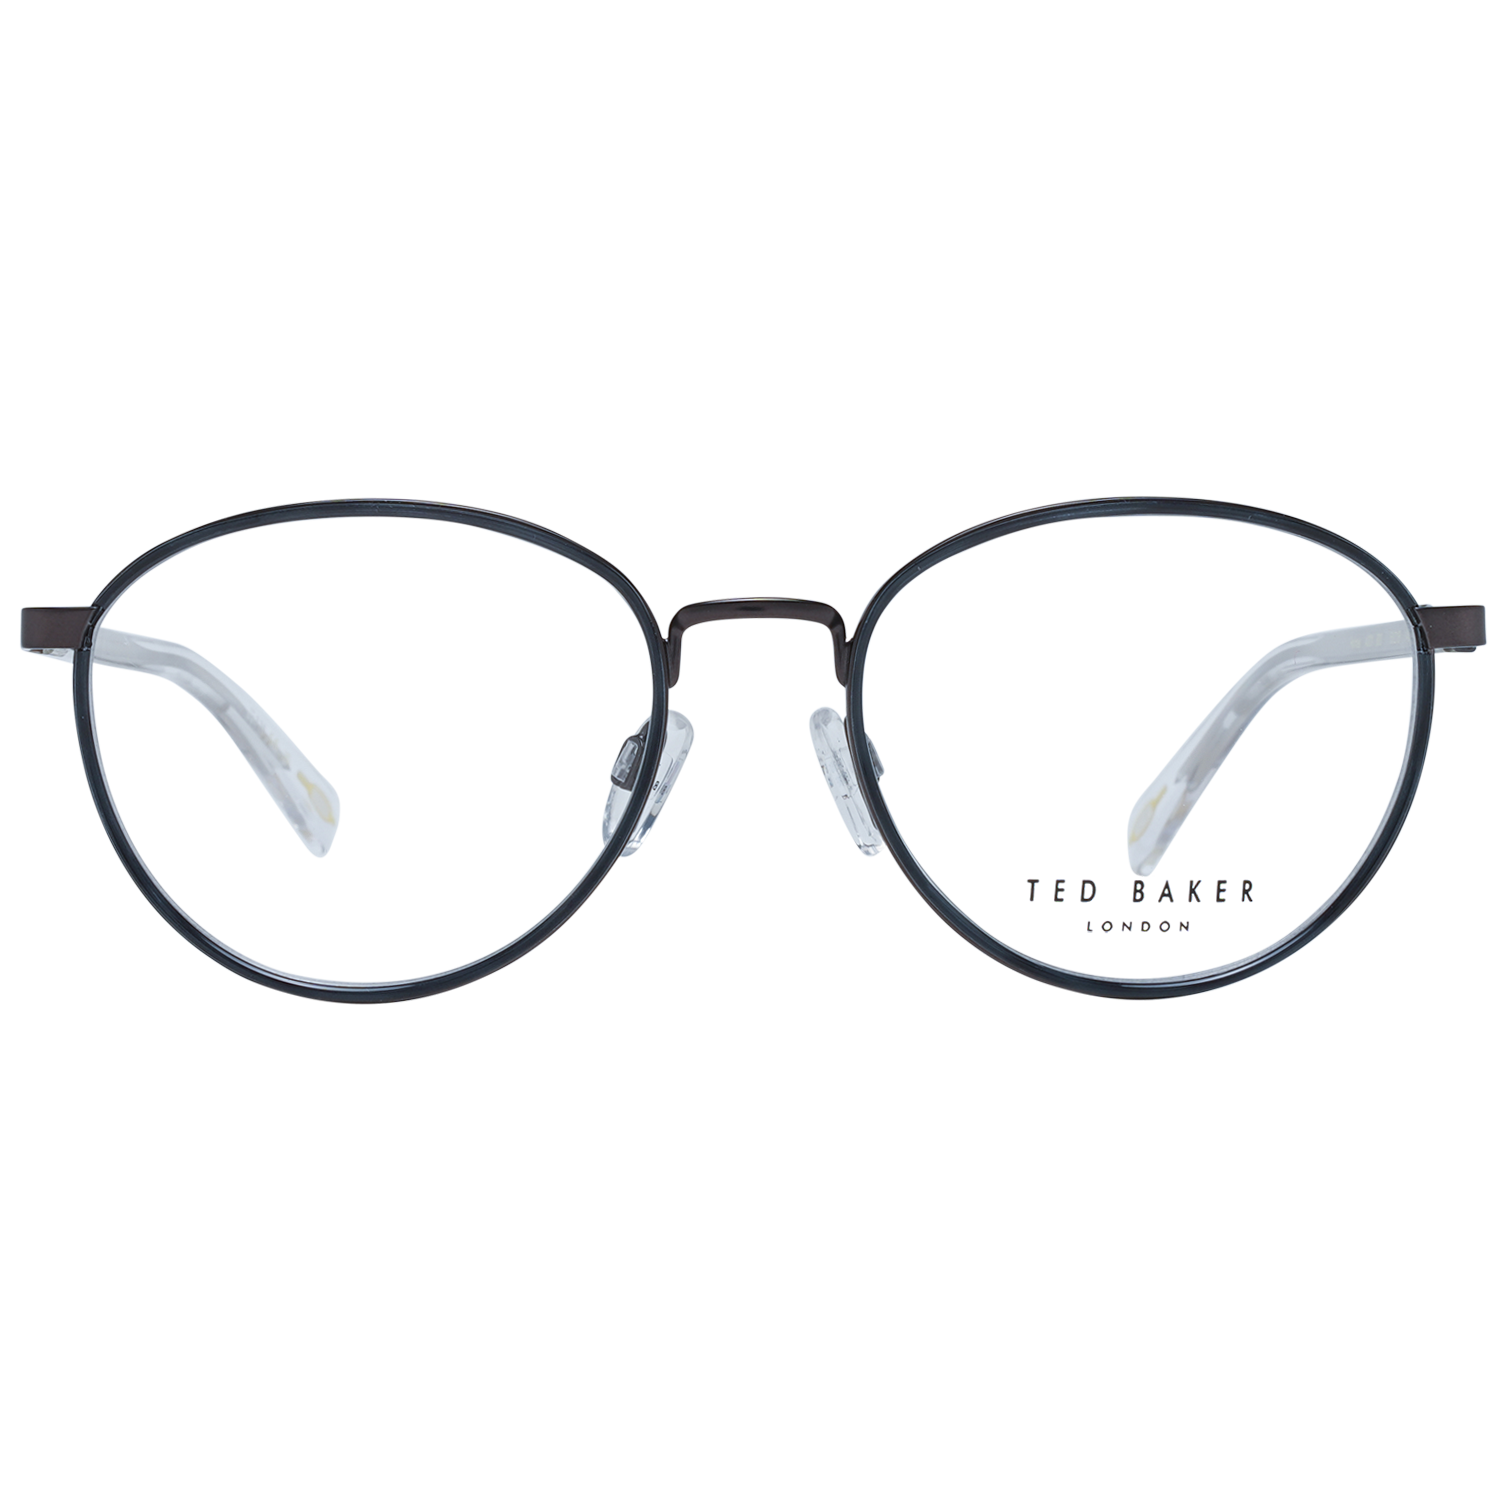 Ted Baker Frames Ted Baker Optical Frame Prescription Glasses TB4301 800 53 Eyeglasses Eyewear UK USA Australia 